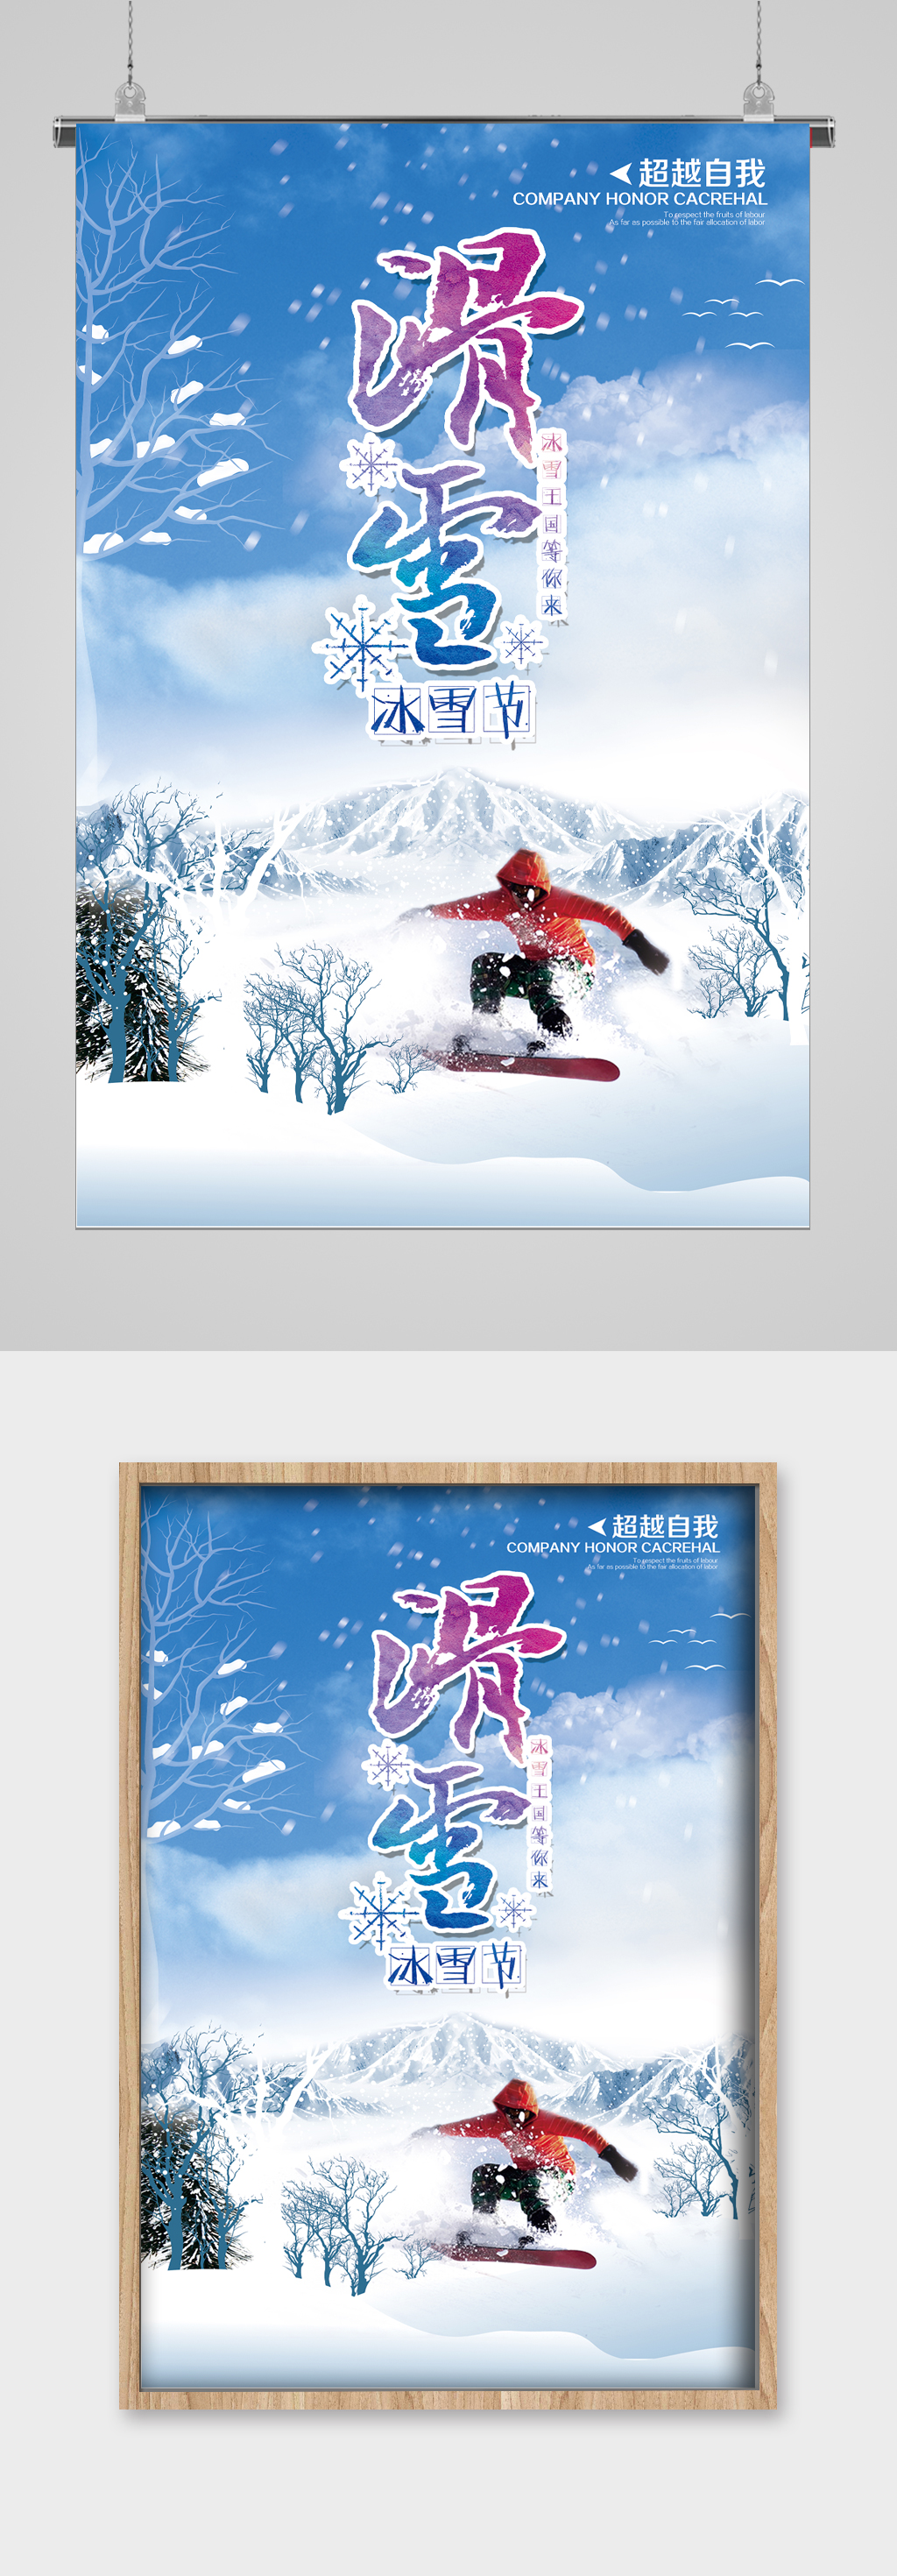 冬季滑雪冰雪节宣传海报